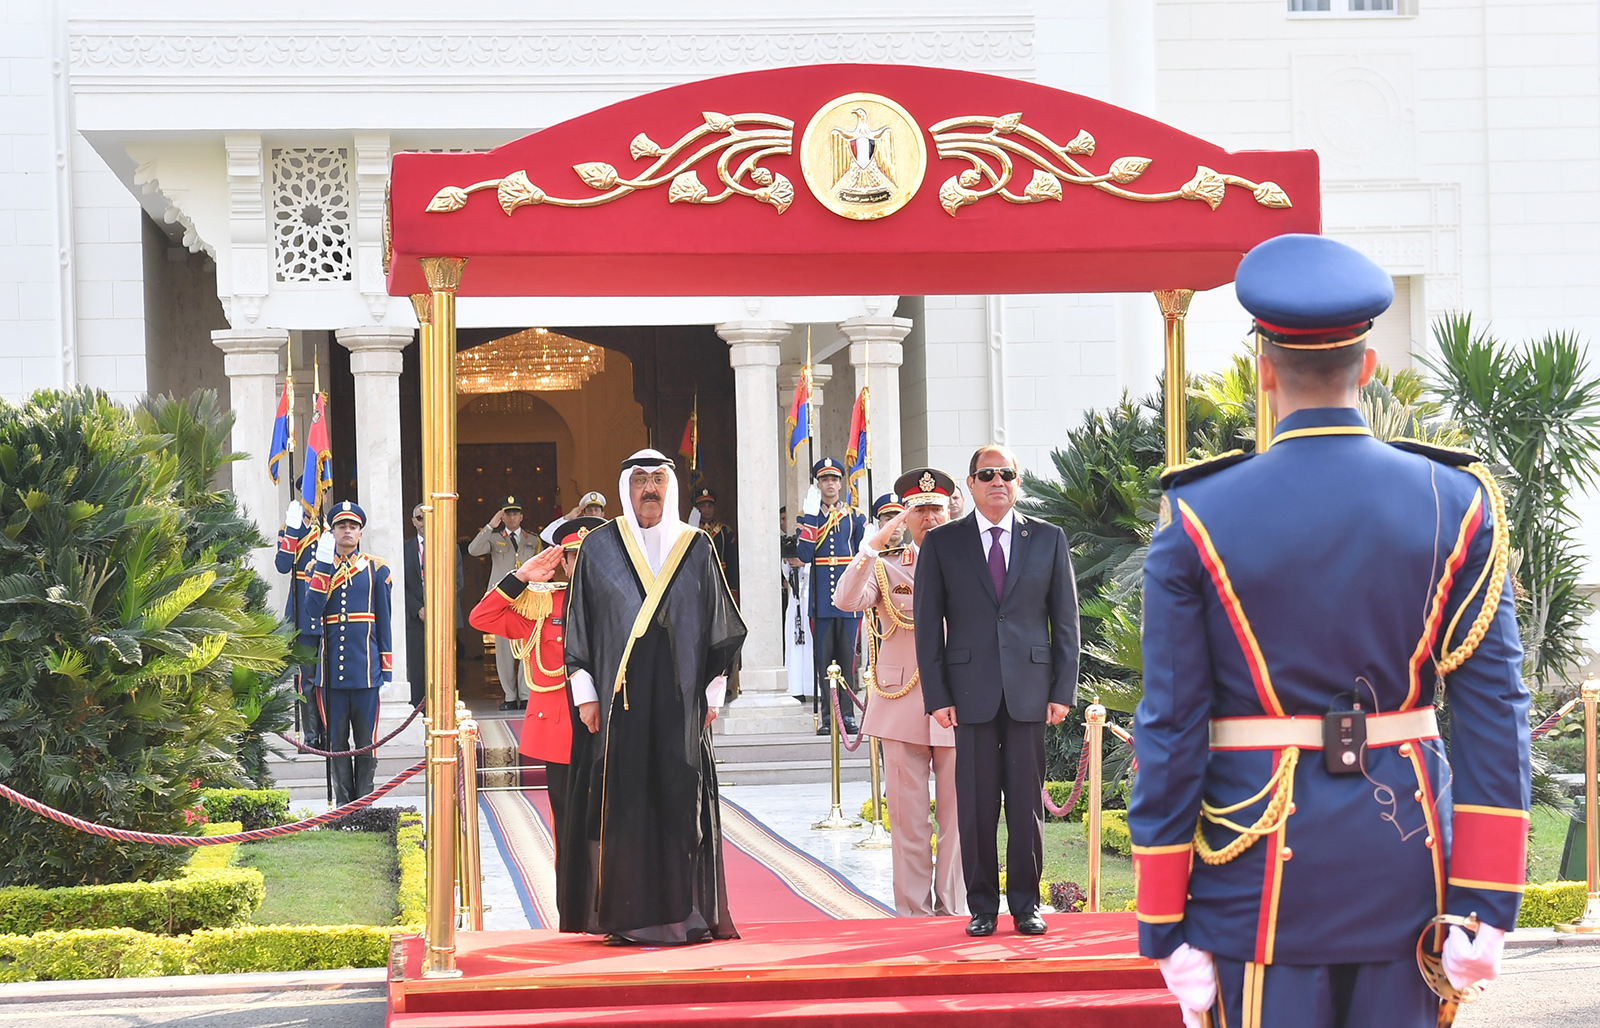 مراسم استقبال رسمية لسمو أمير البلاد في قصر الاتحادية بجمهورية مصر العربية 